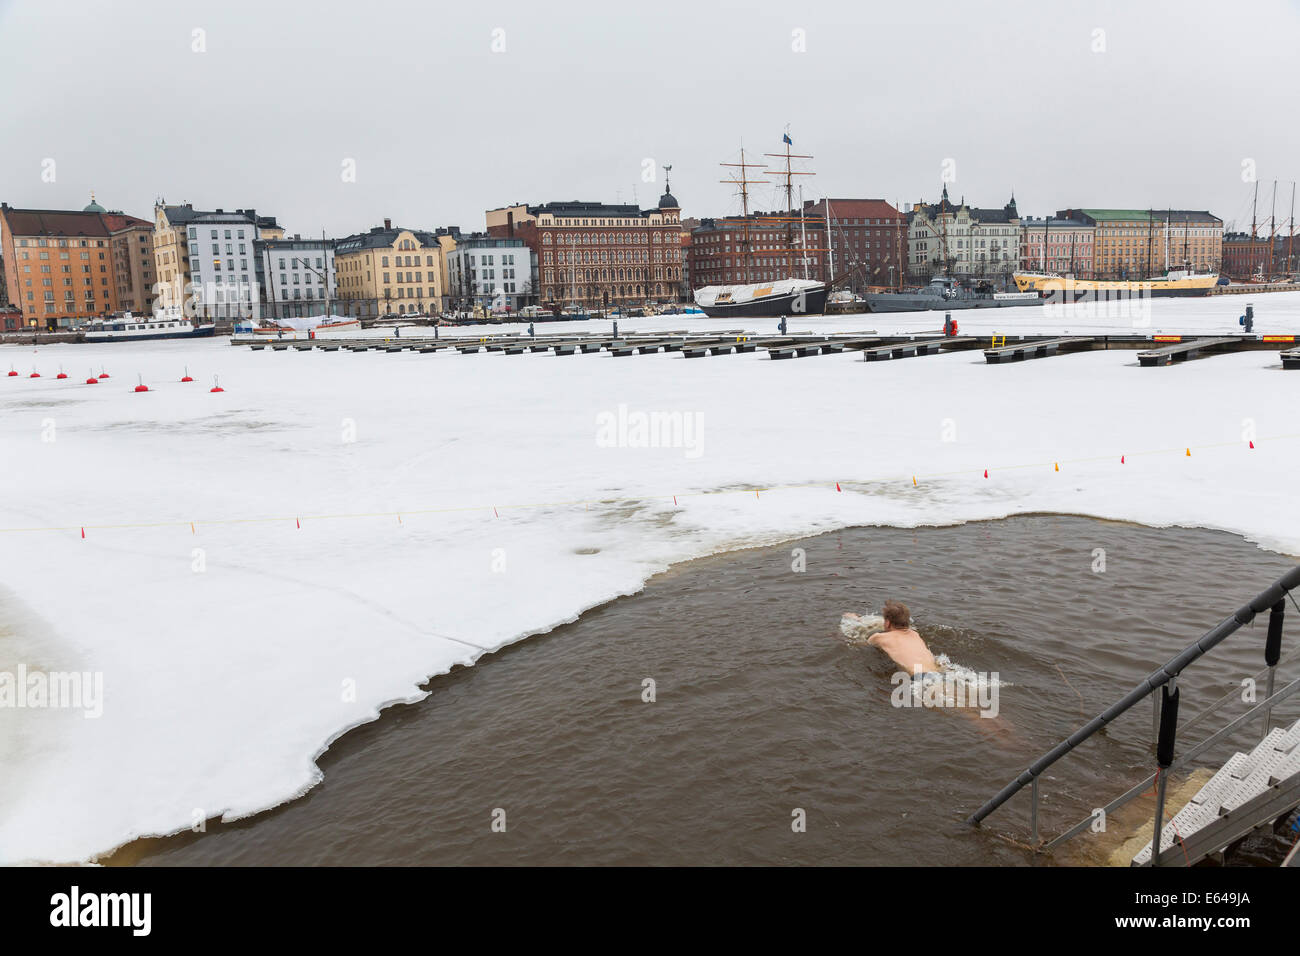 Piscine de glace, port d'Helsinki, Helsinki, Finlande Banque D'Images